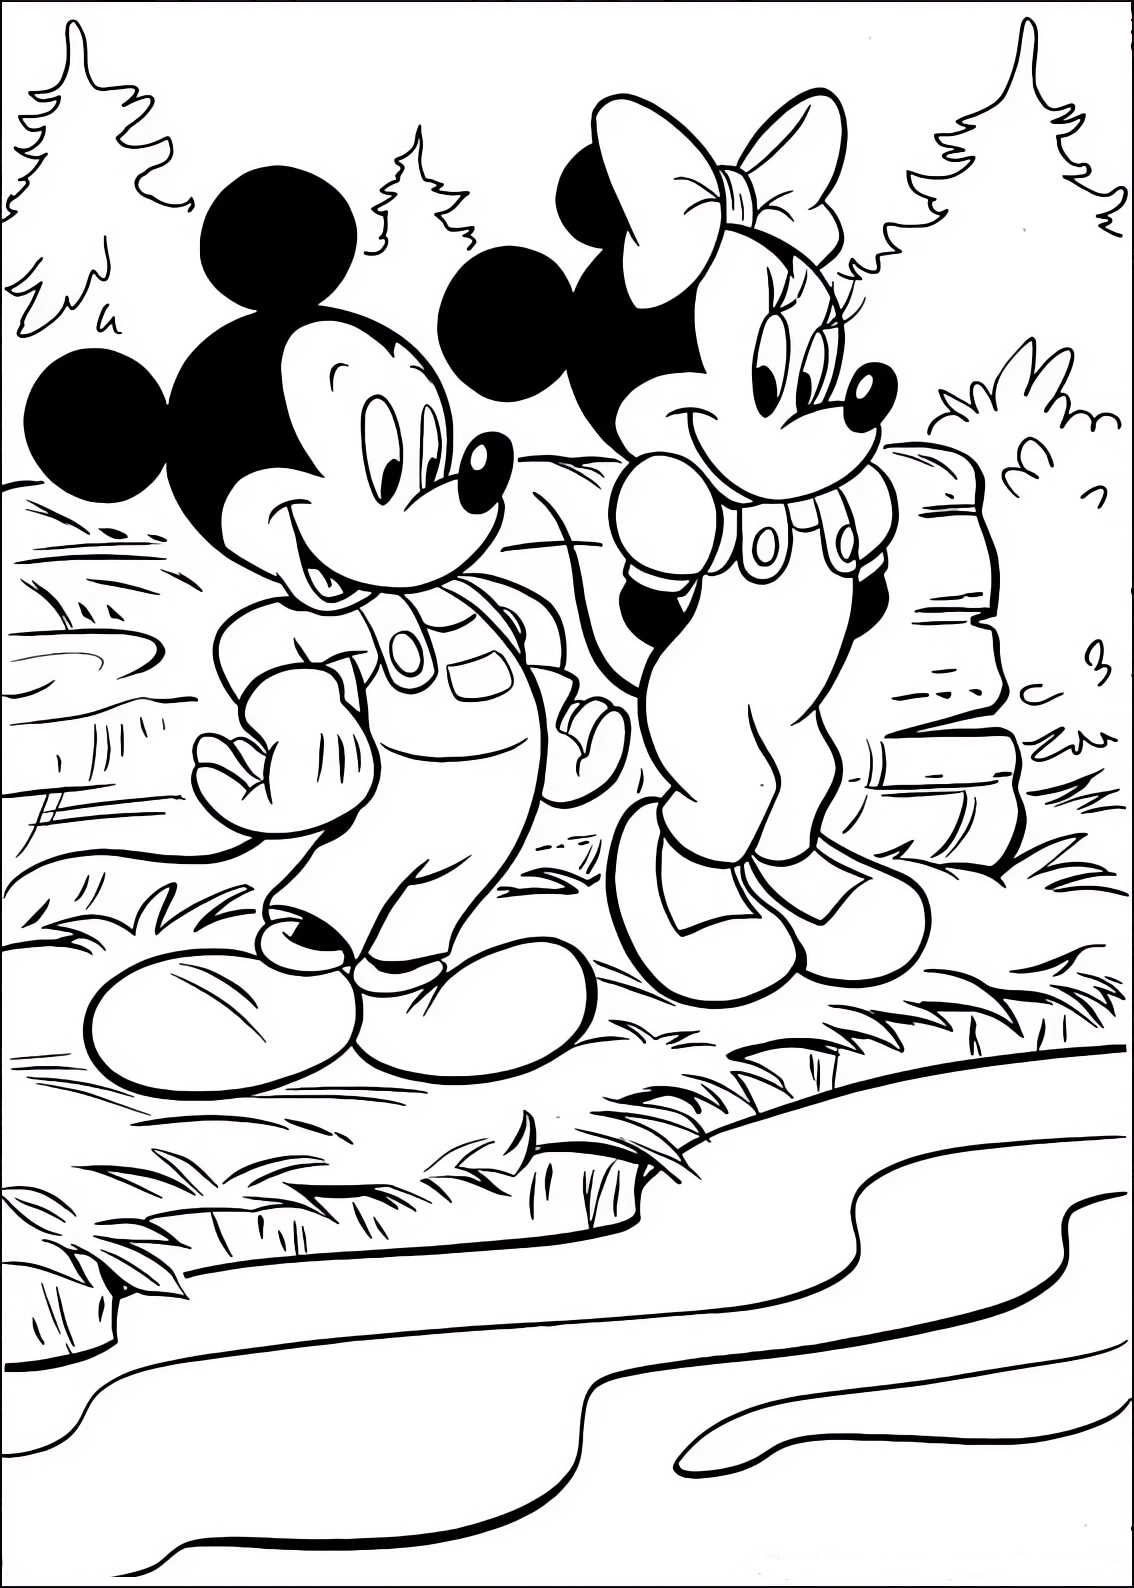 Disegno da colorare di Minnie e Topolino (Mickey Mouse) sulla riva del fiume